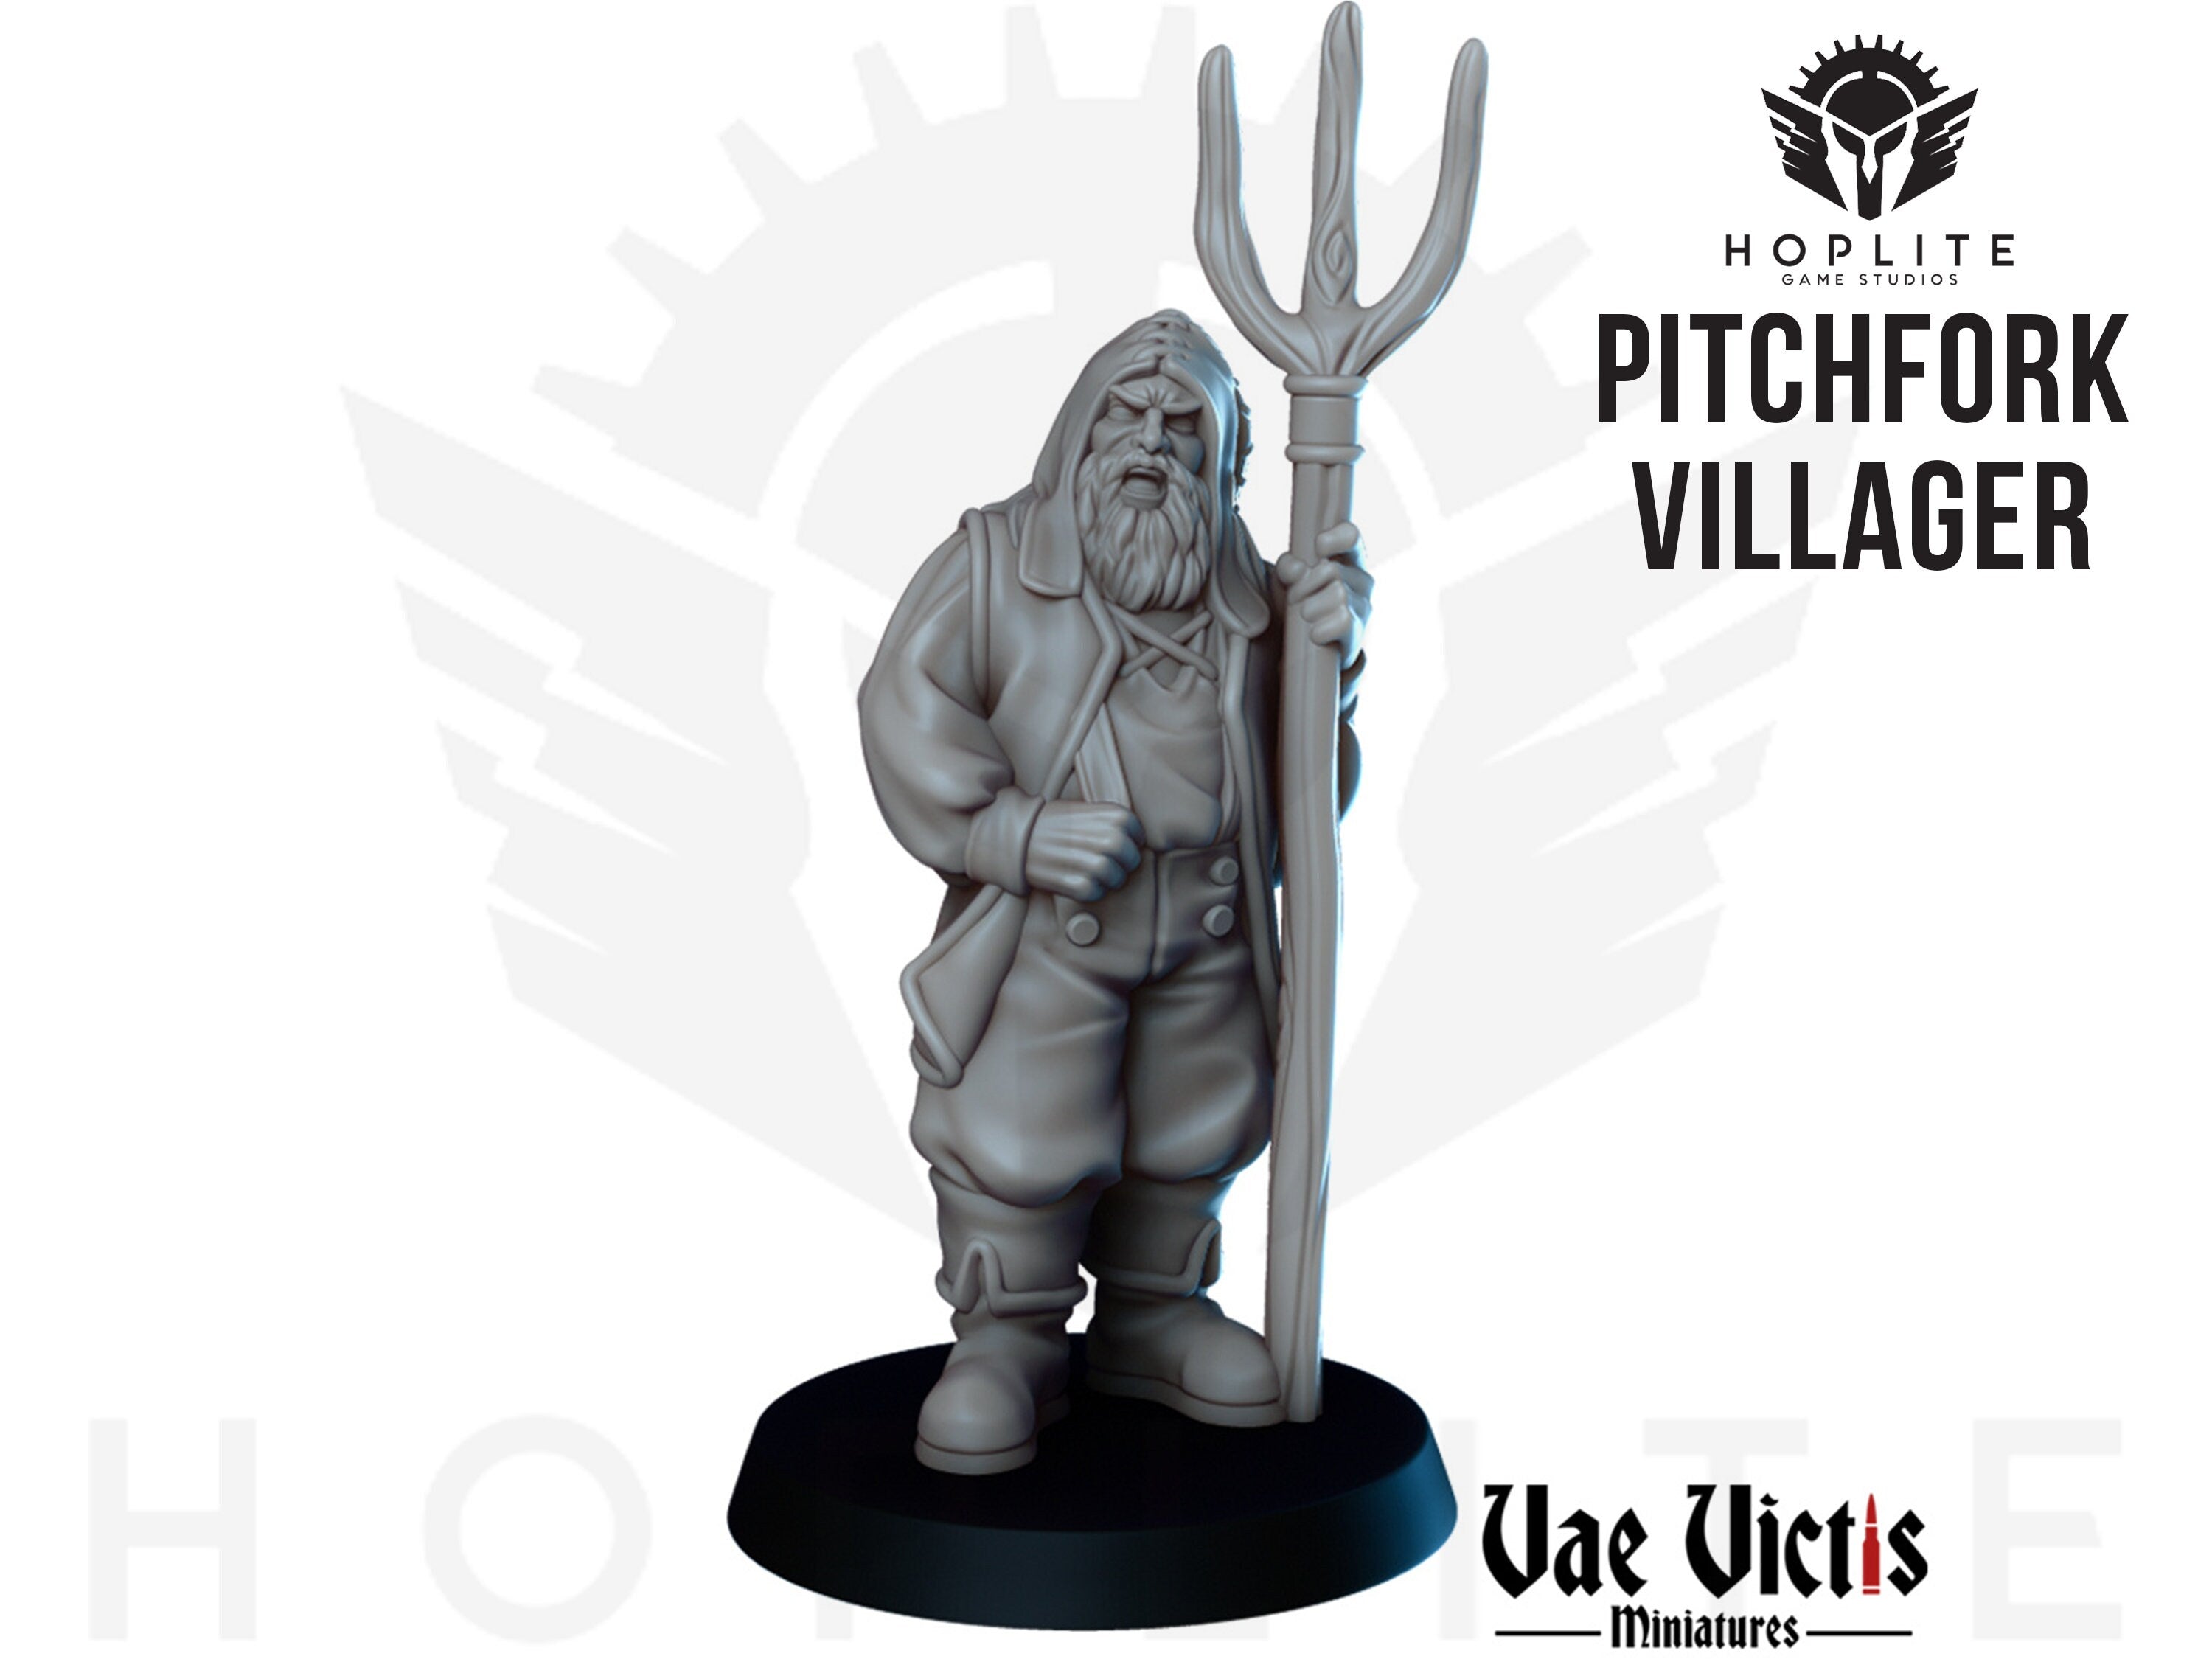 The Pitchfork Villager